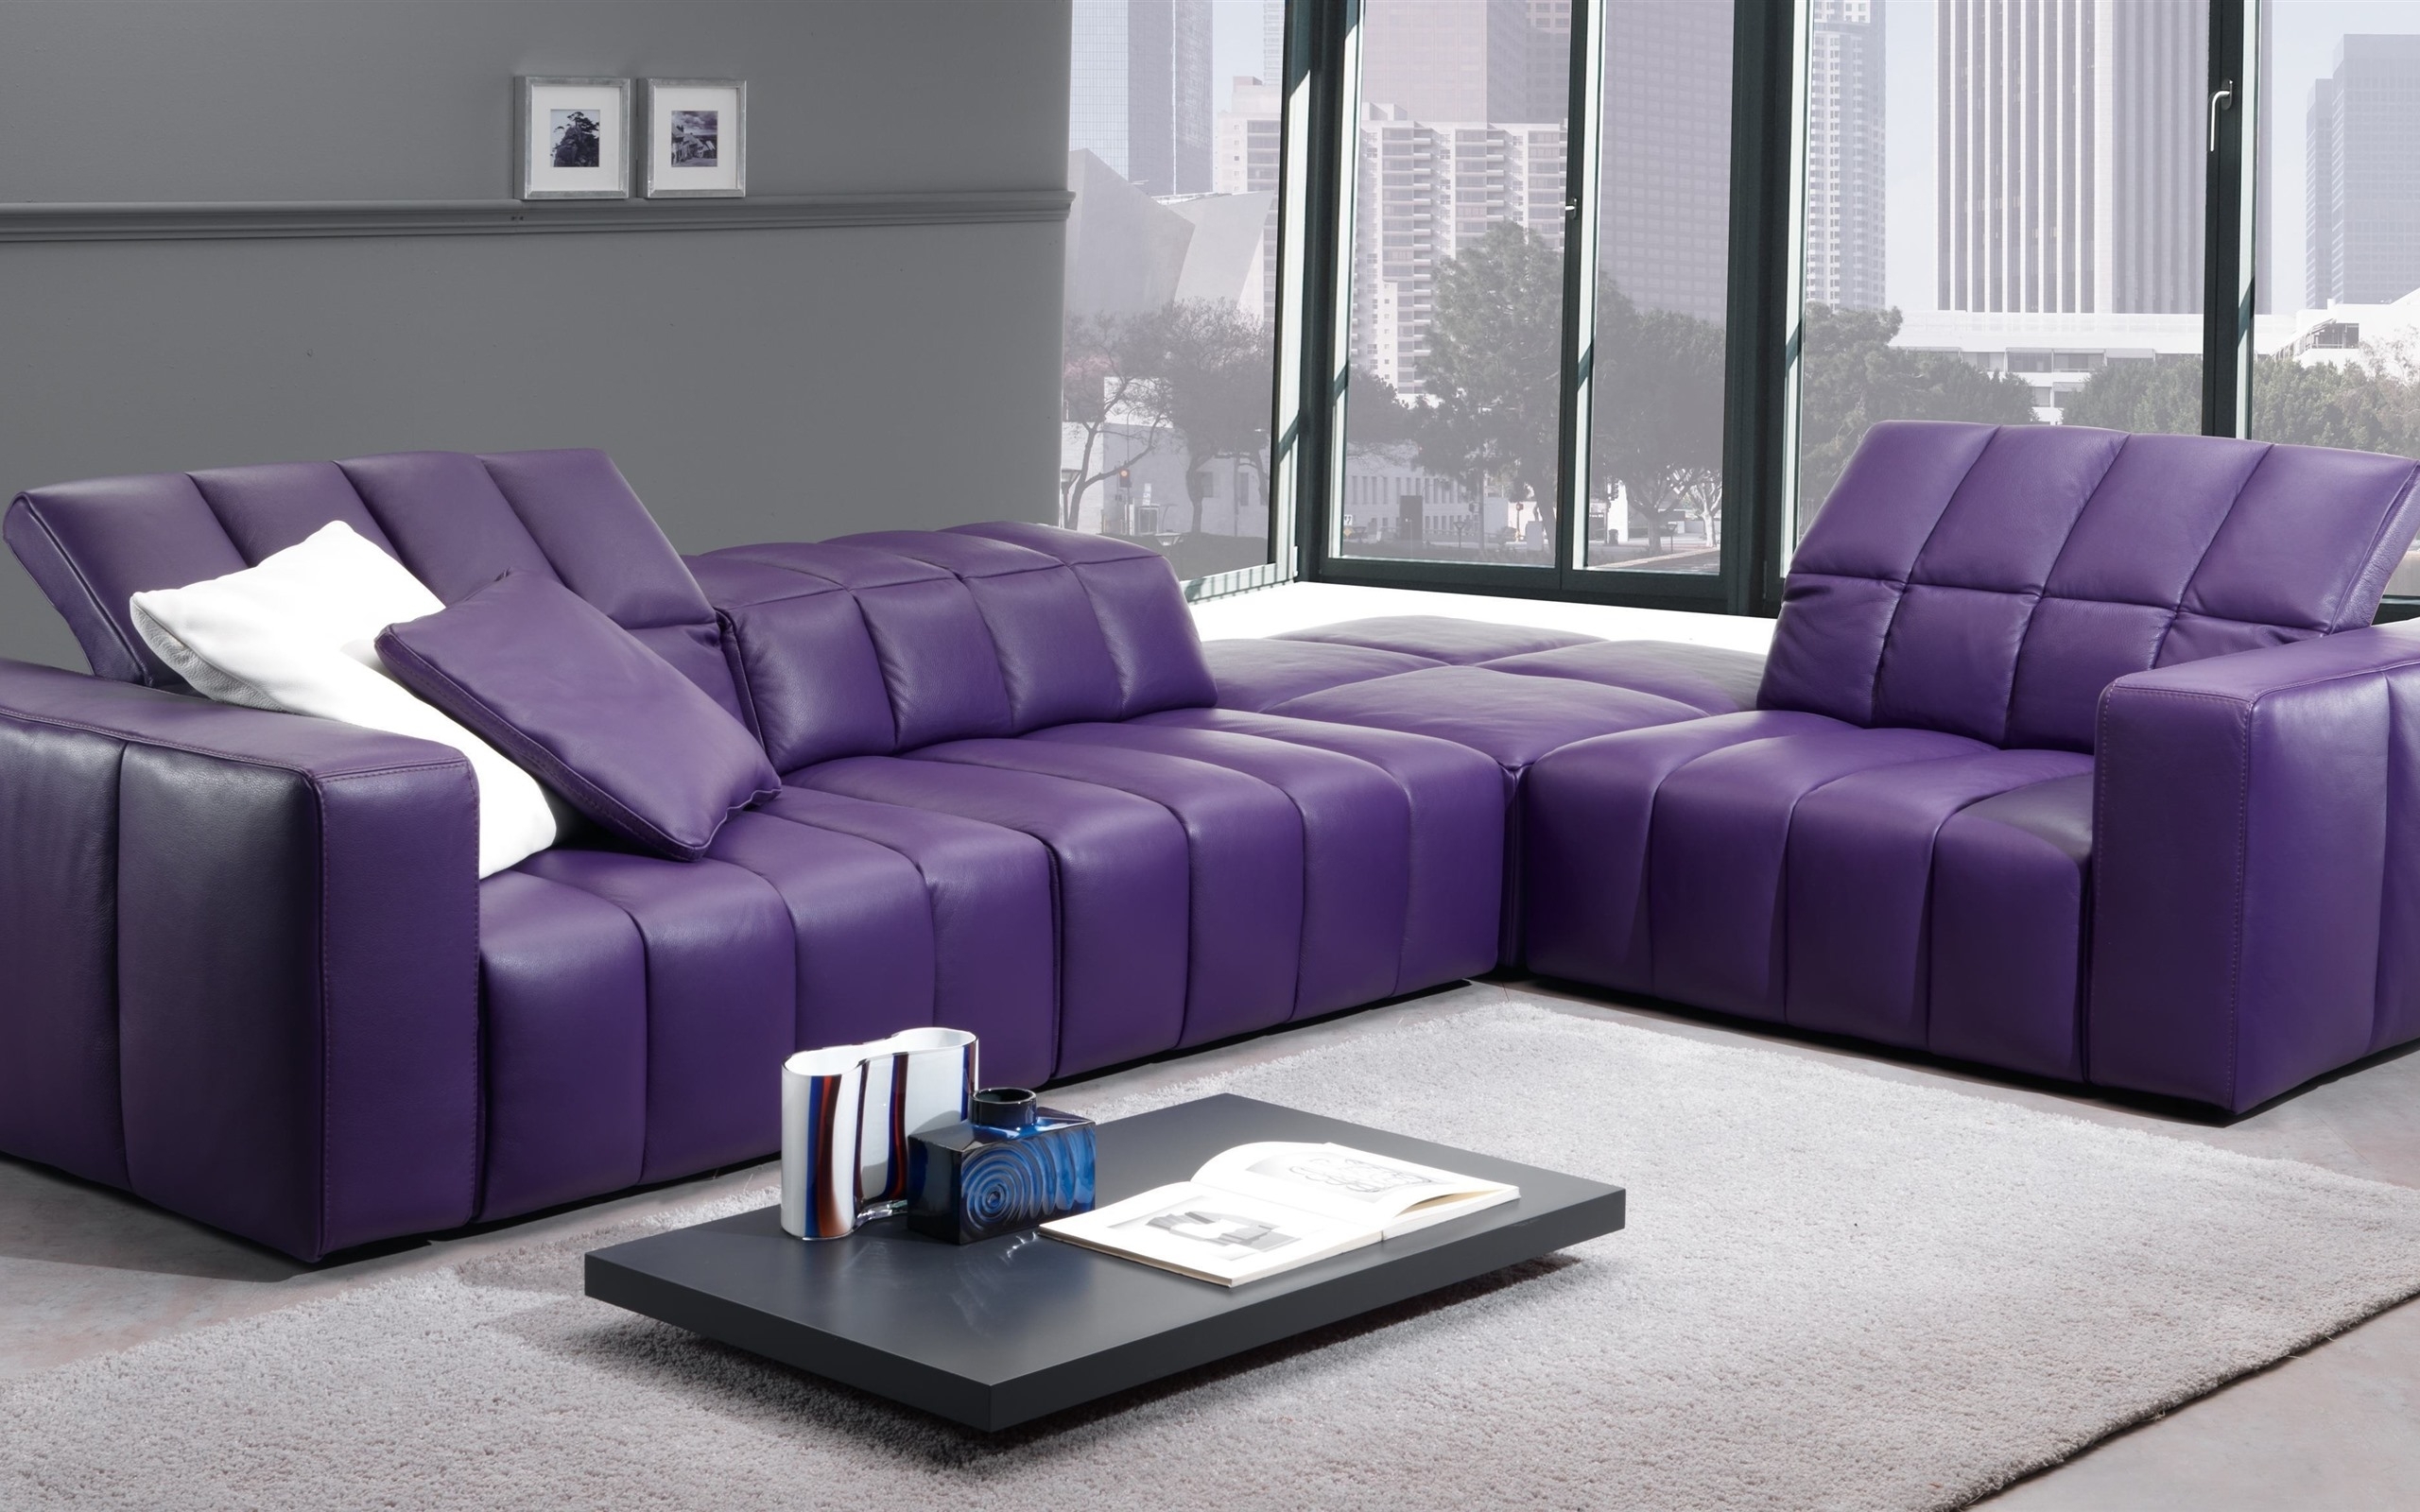 Purple Living Room Set Foter